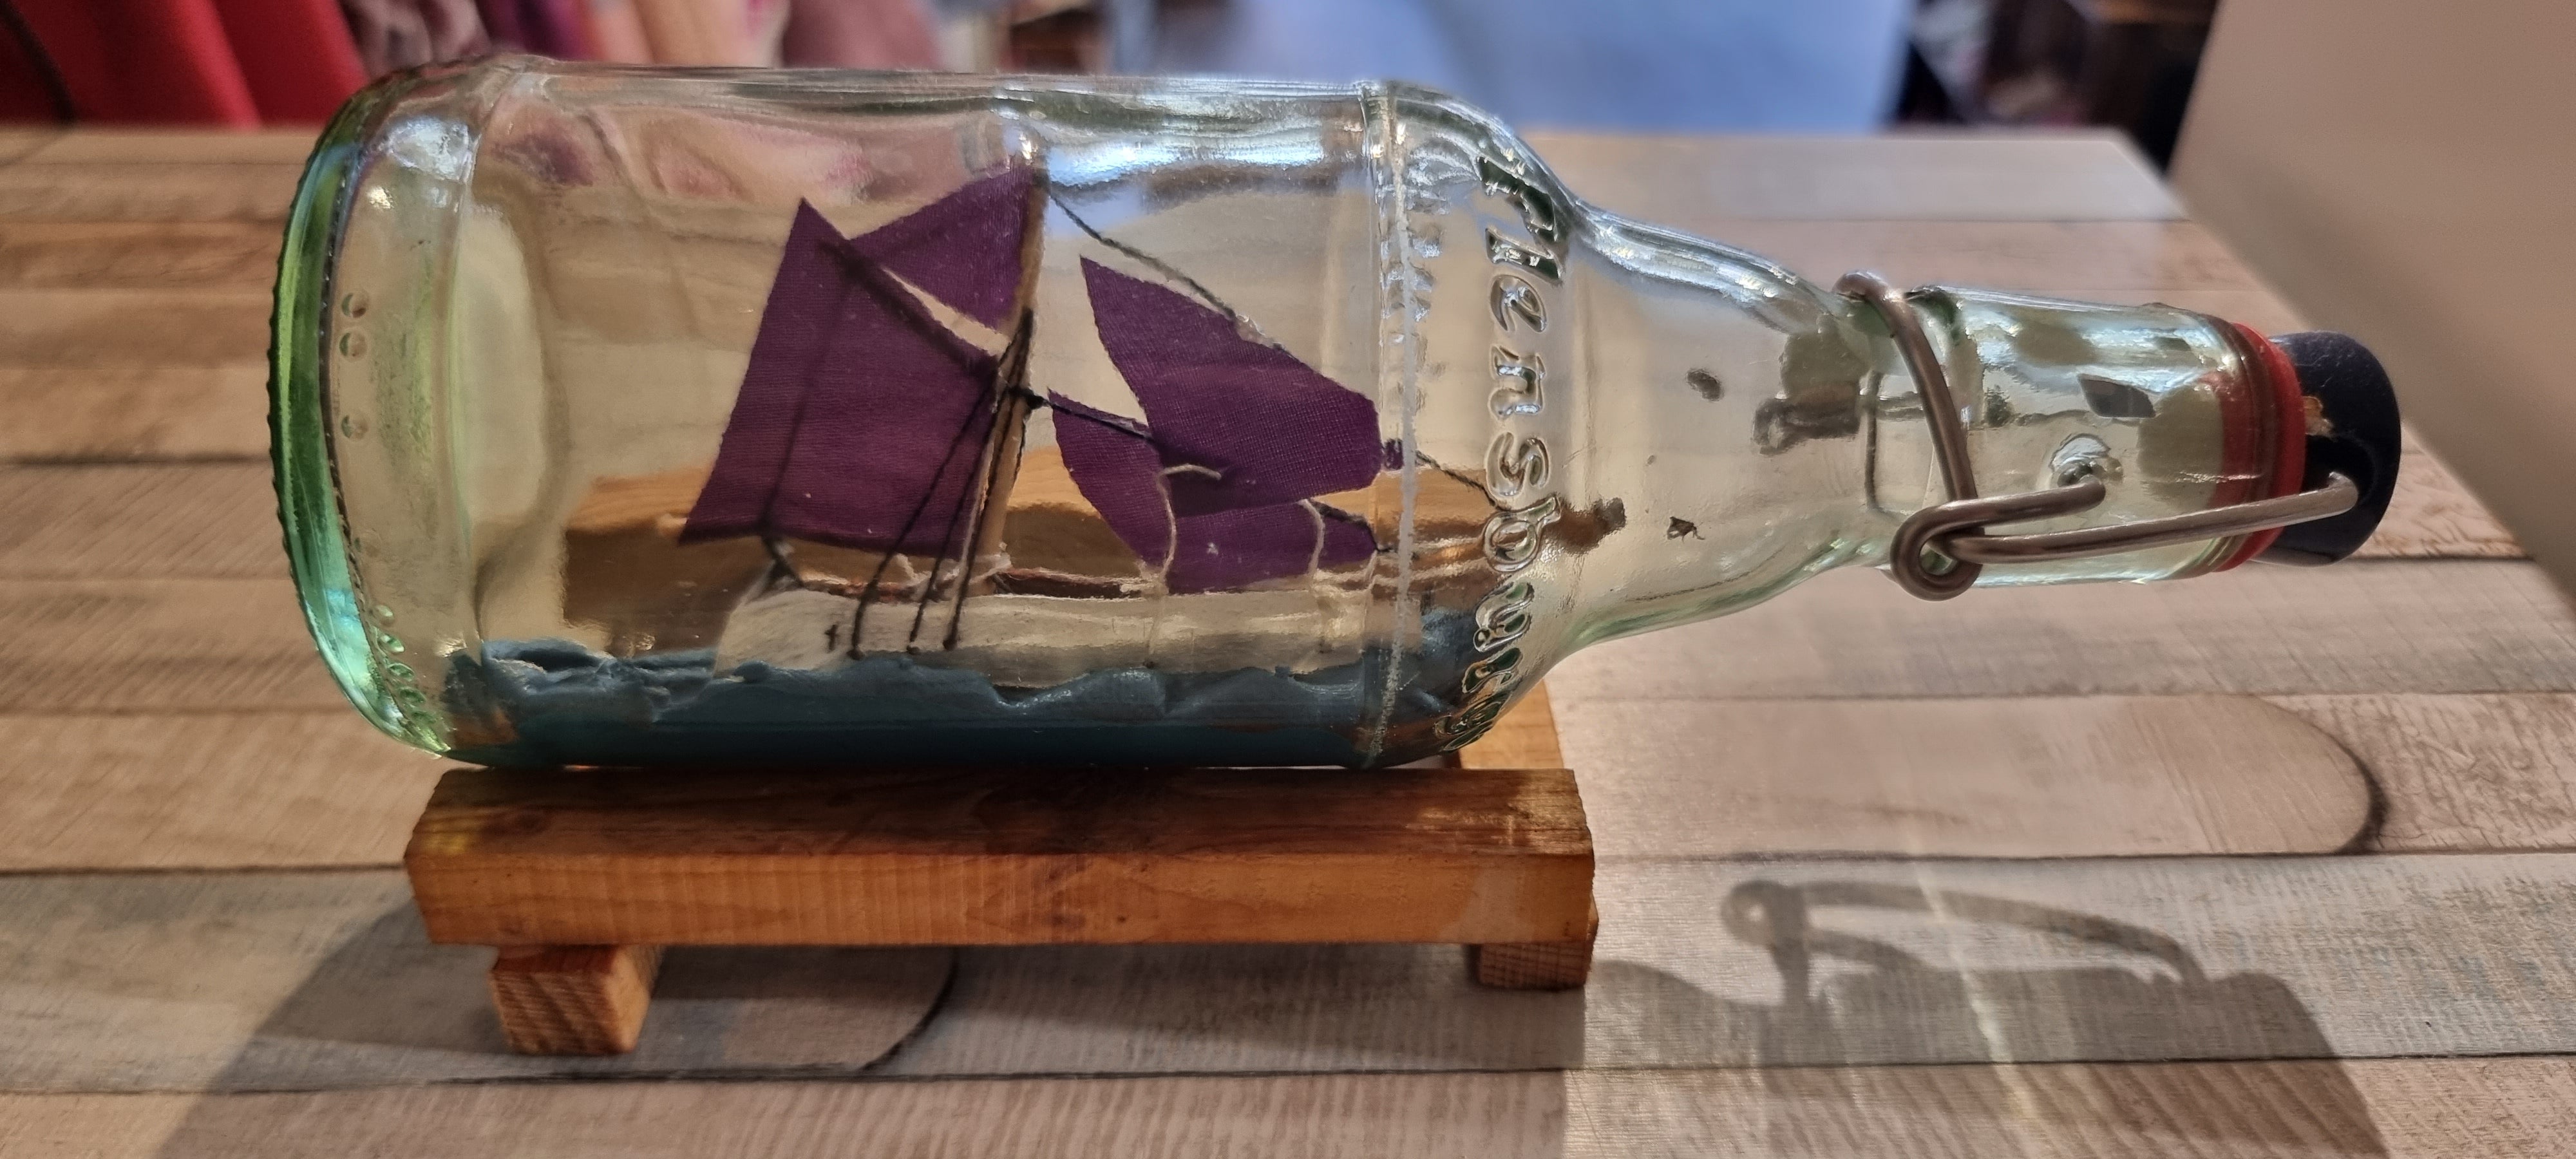 Buddelschiff in Flens-Flasche Violettes Segel Made in Flensburg